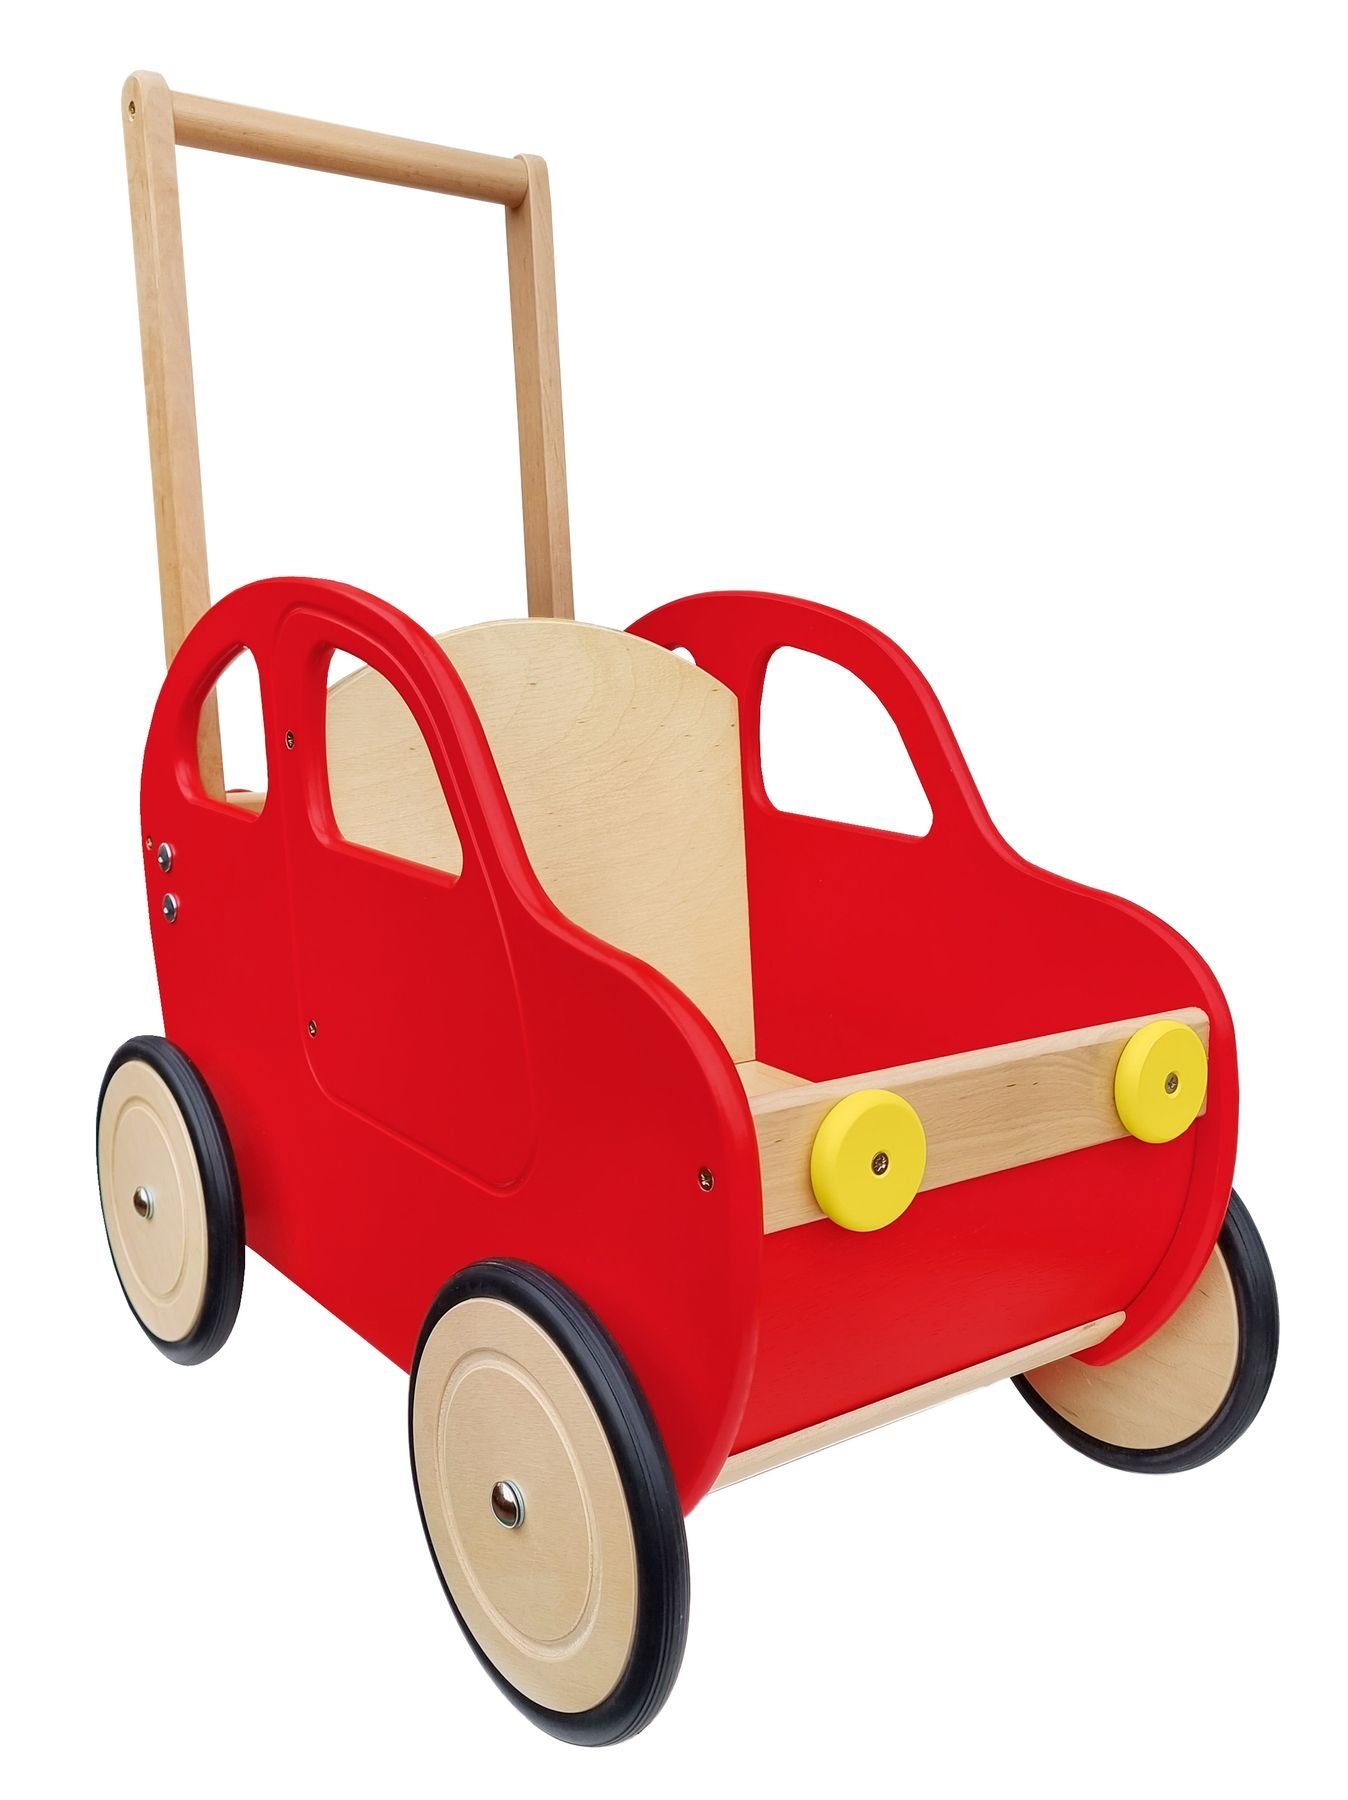 ERST-HOLZ Puppenwagen Puppenwagen rotes Auto Teddytransporter Lauflernwagen